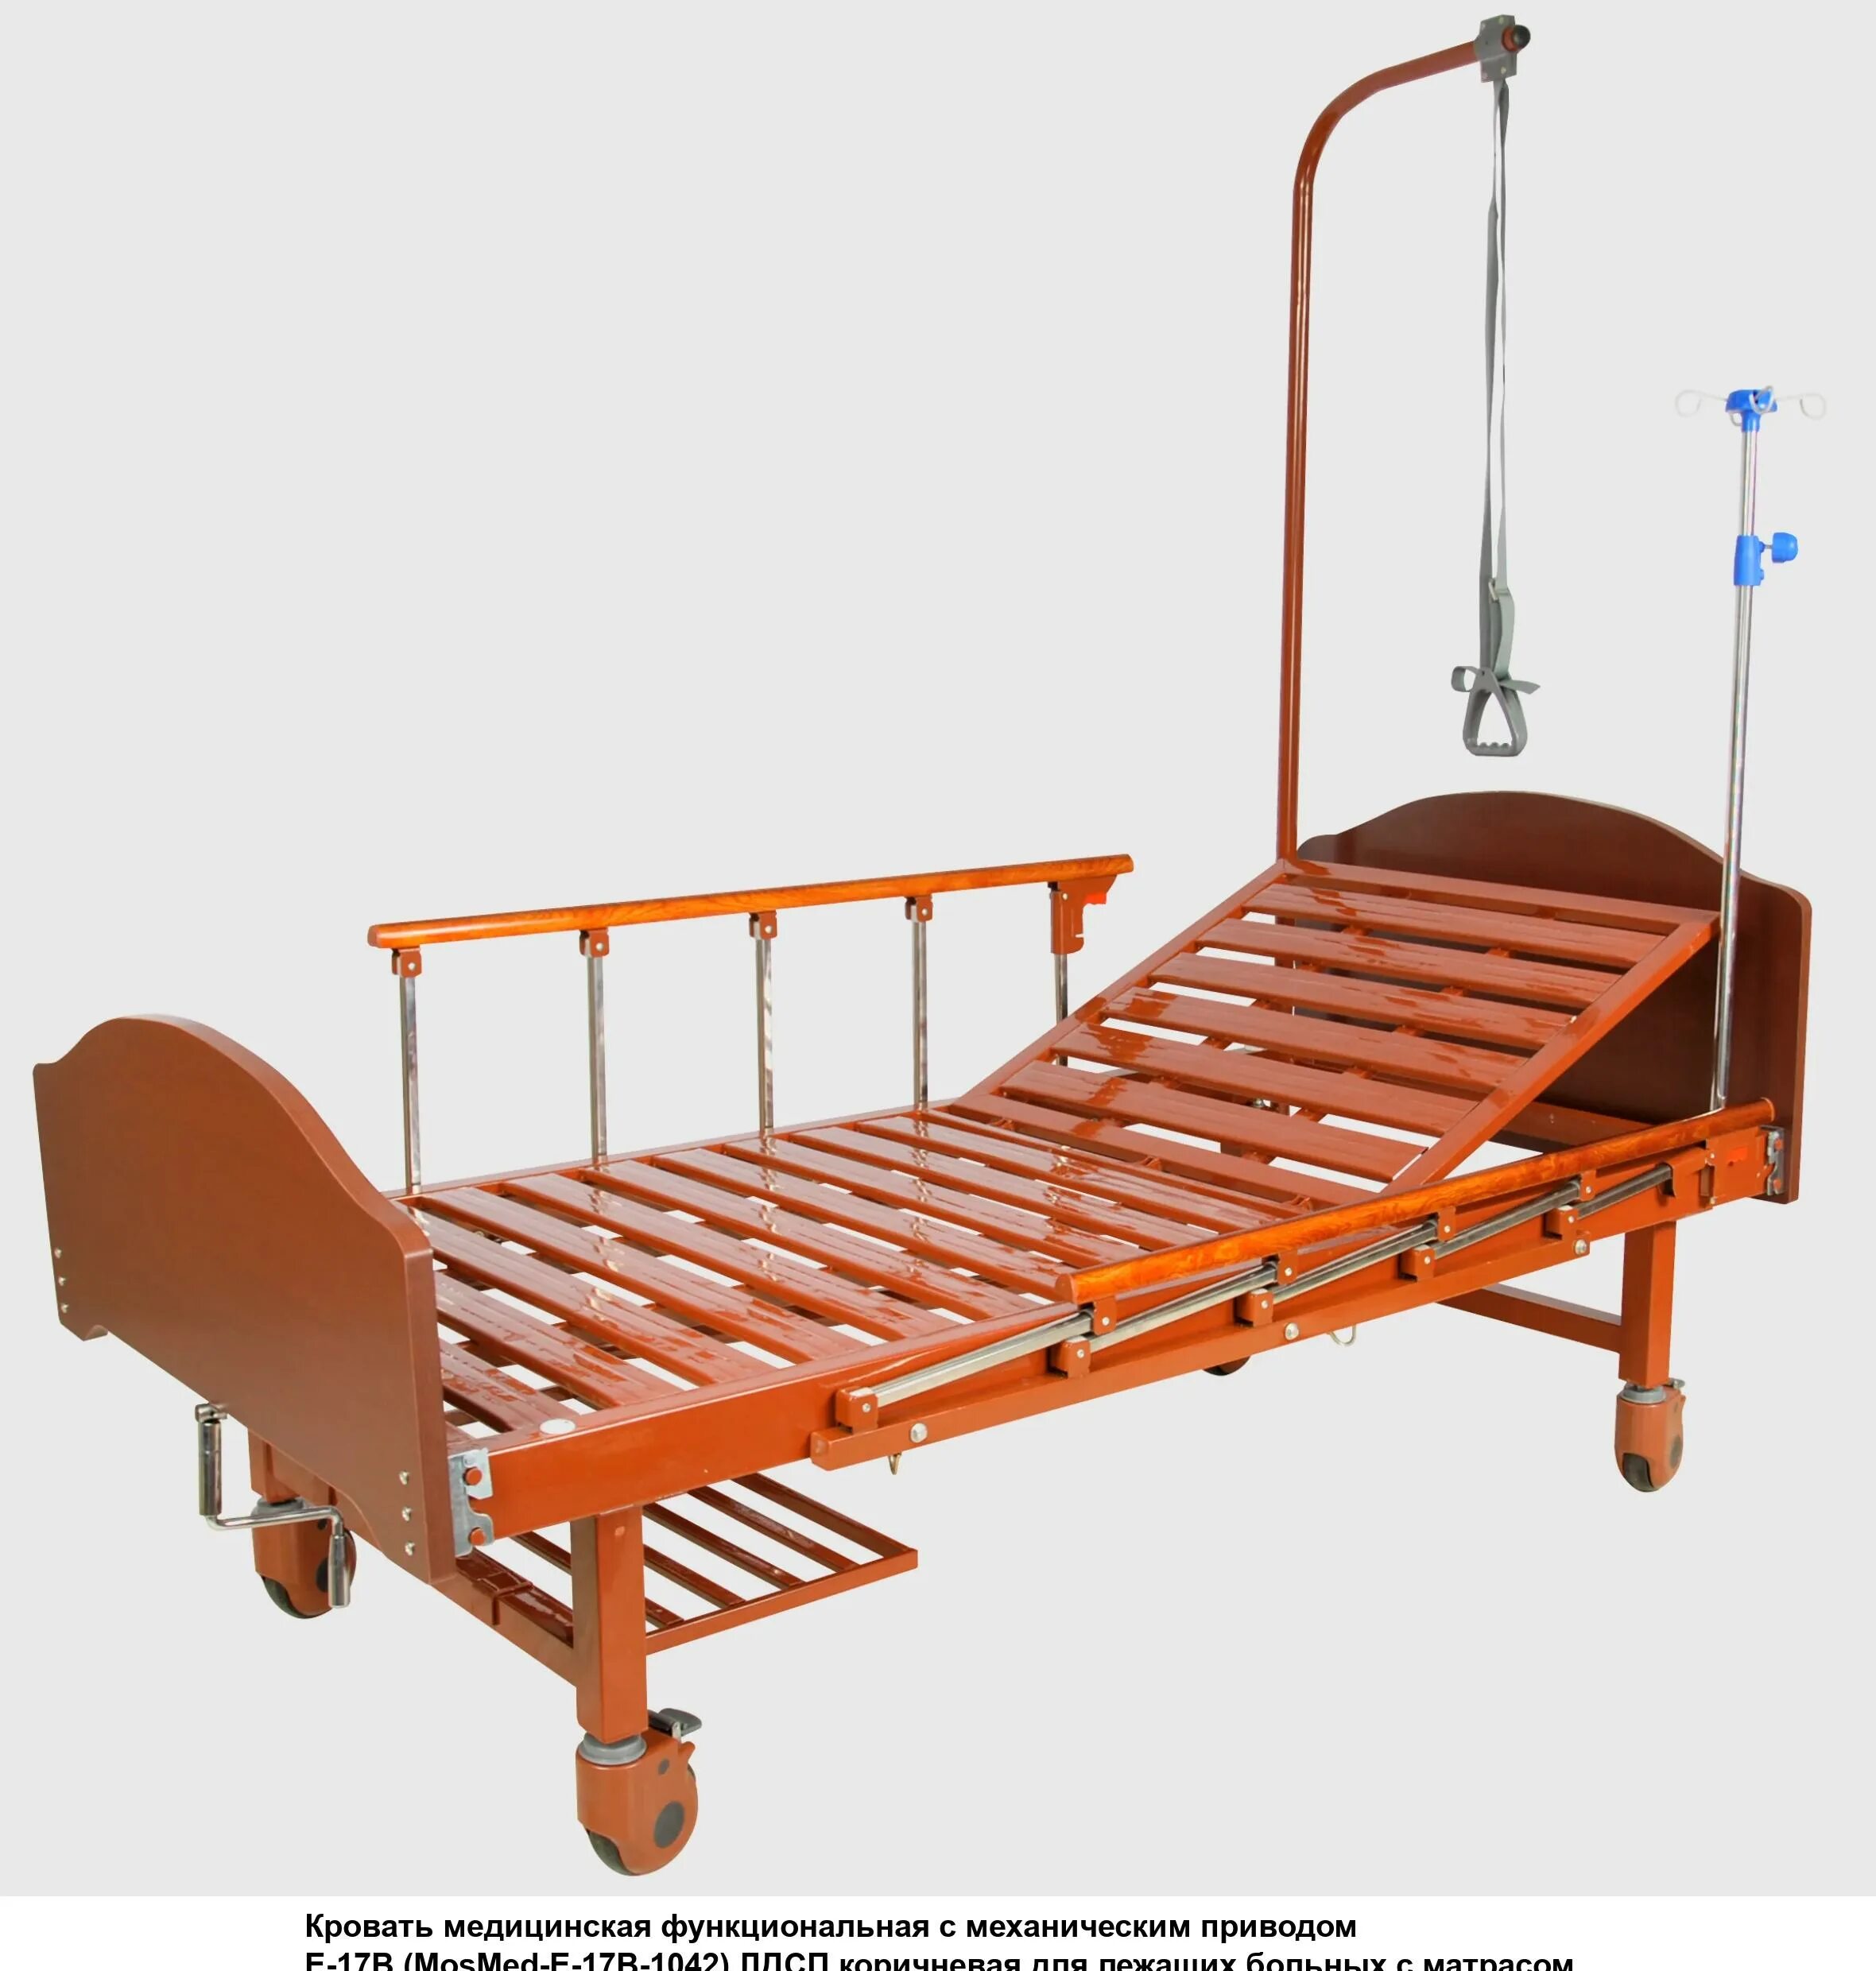 Кровать функциональная c механическим приводом e-17b. Кровать механическая med-mos. Кровать с механическим приводом Belberg 17b-1л. Кровать Армед rs105-b. Купить кровать для лежачих больных с электроприводом